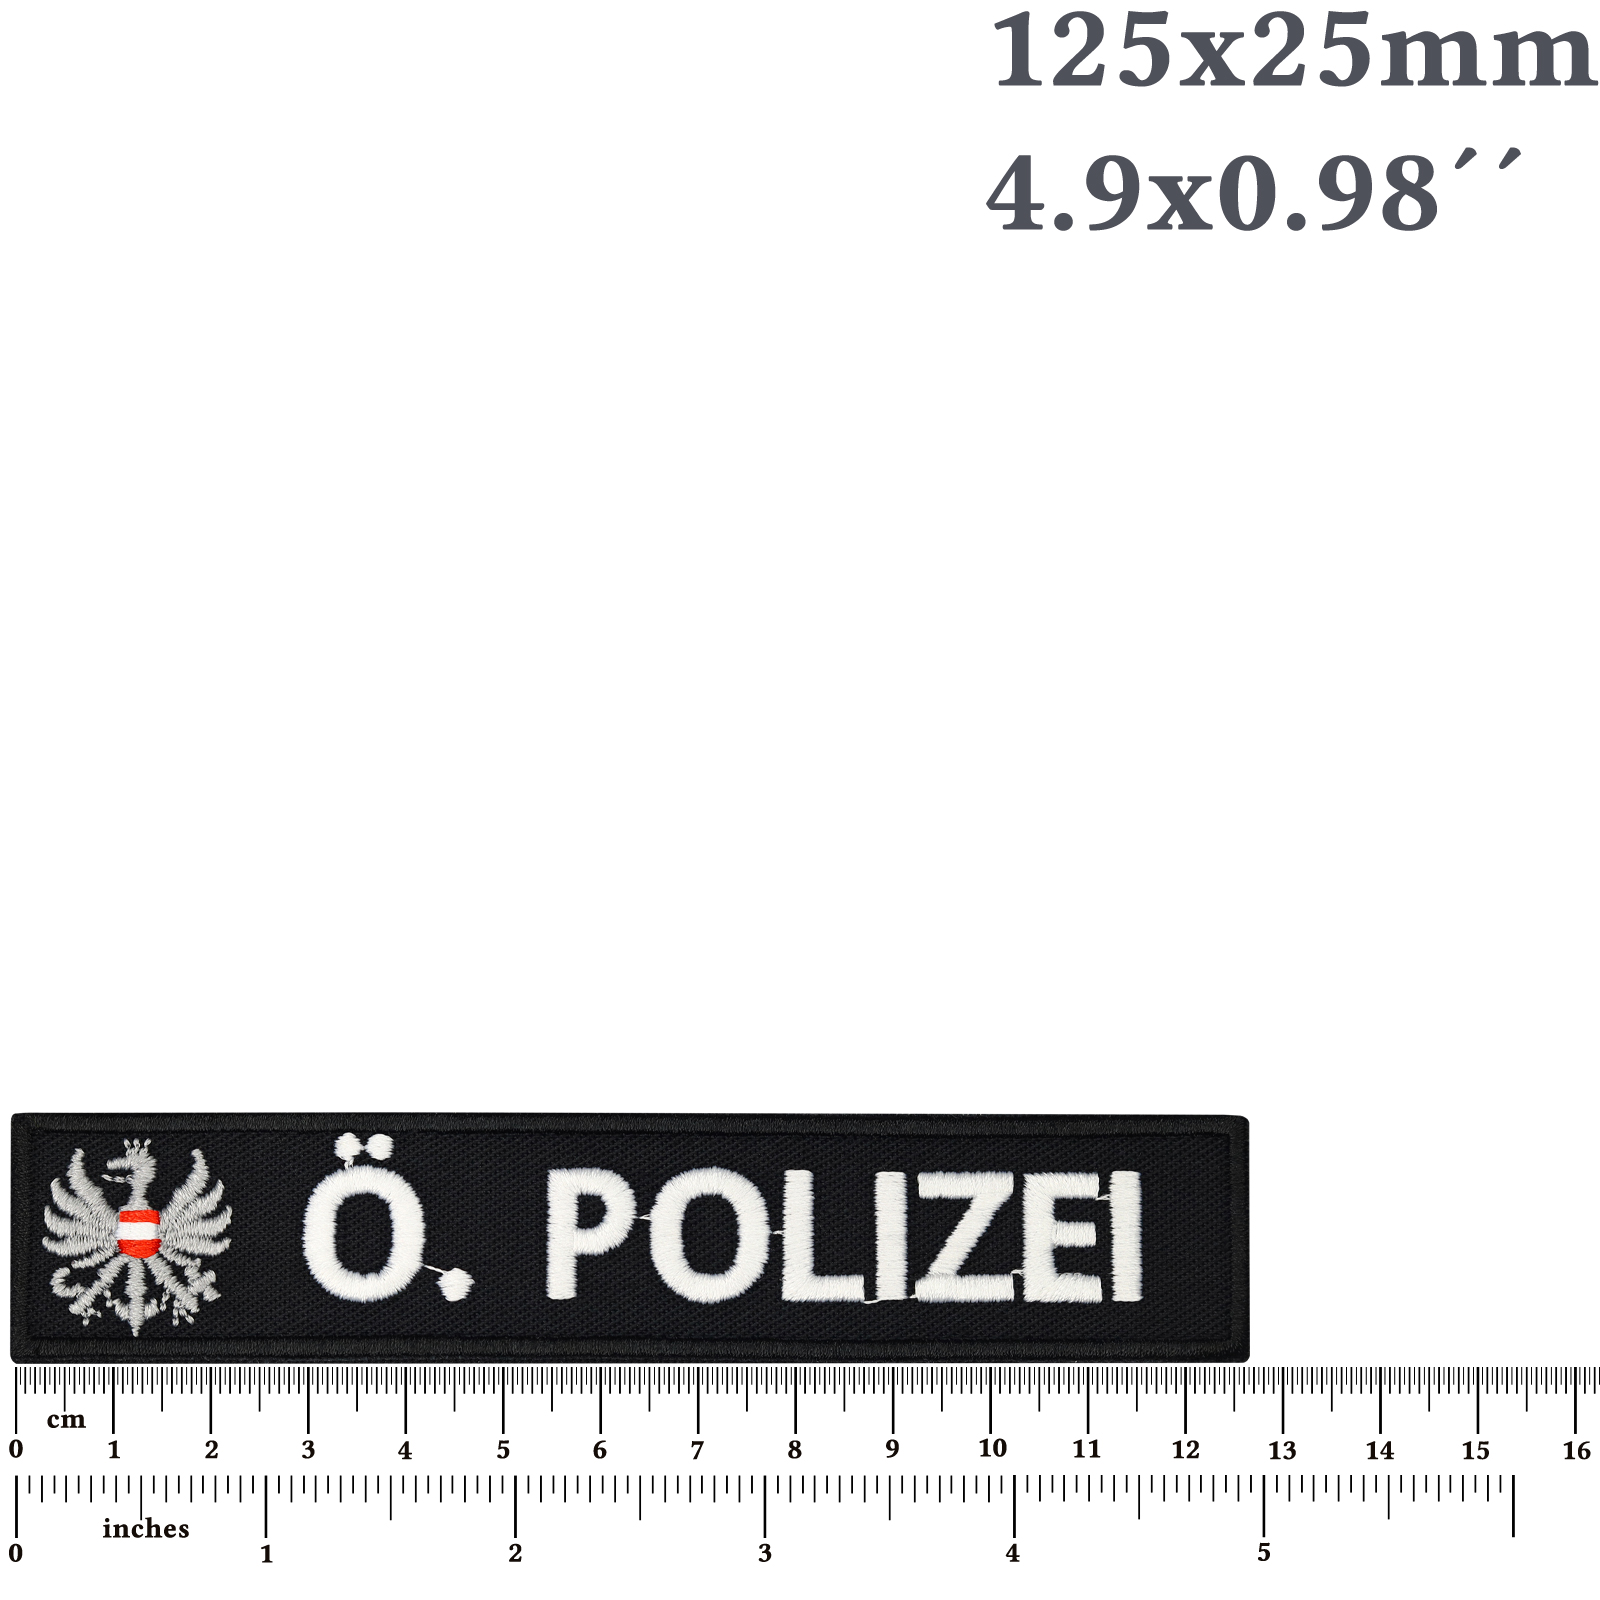 Österreichische Polizei - Patch